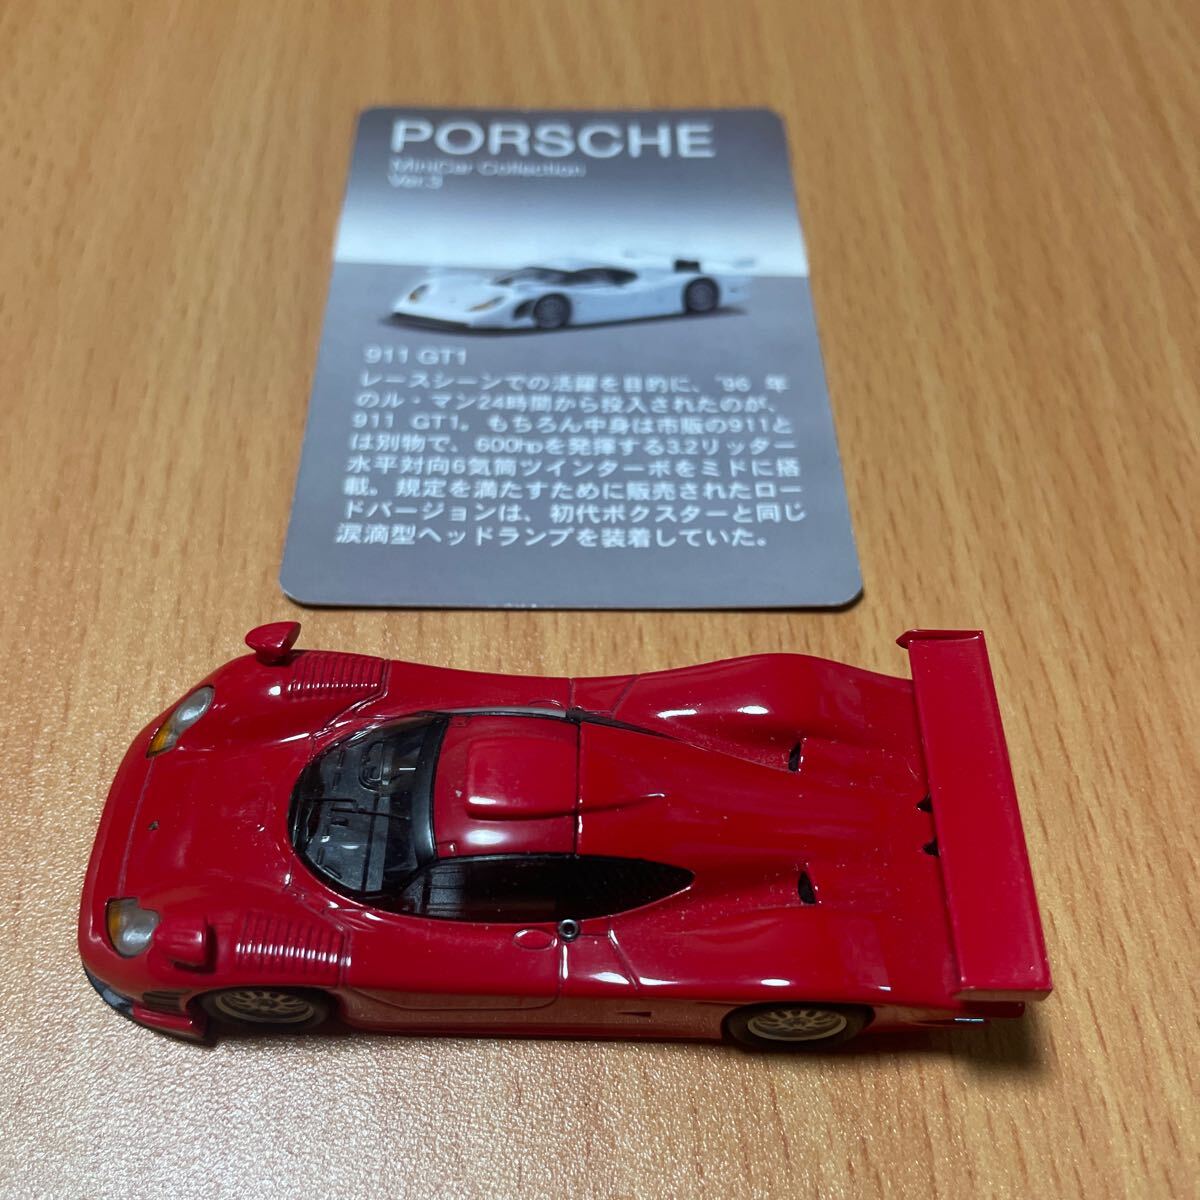 ☆KYOSHO(京商)☆ ポルシェ 911 GT1 ミニカー サークルK/サンクス限定 モデルカー 1/64スケールの画像3